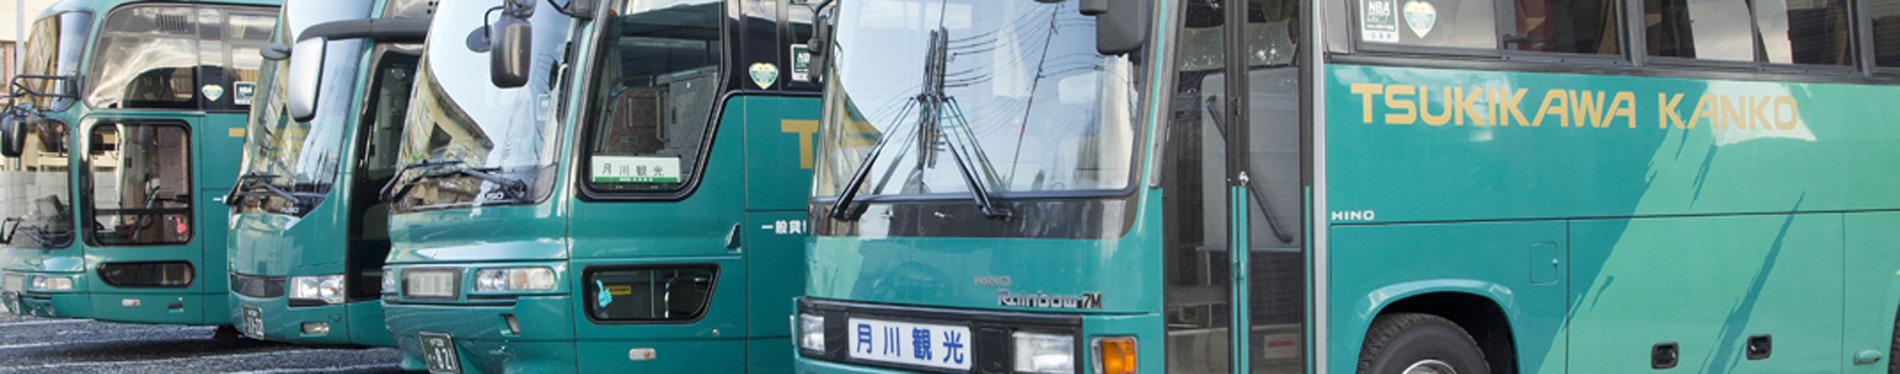 月川観光バス